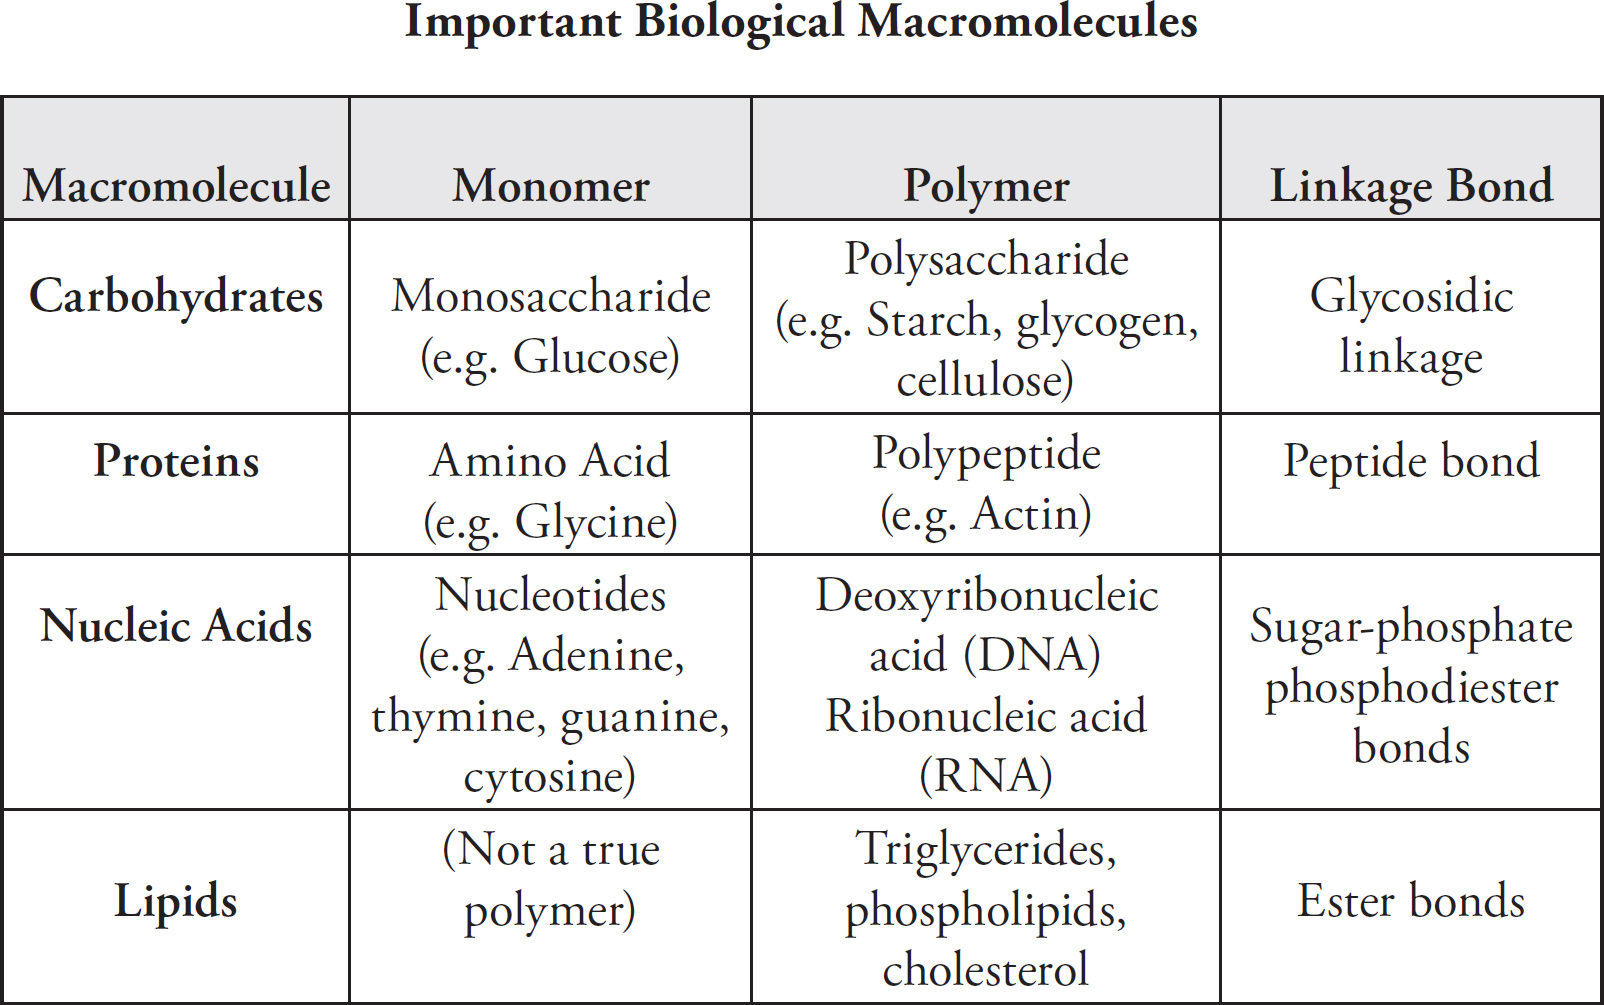 Ap Biology Formula Chart